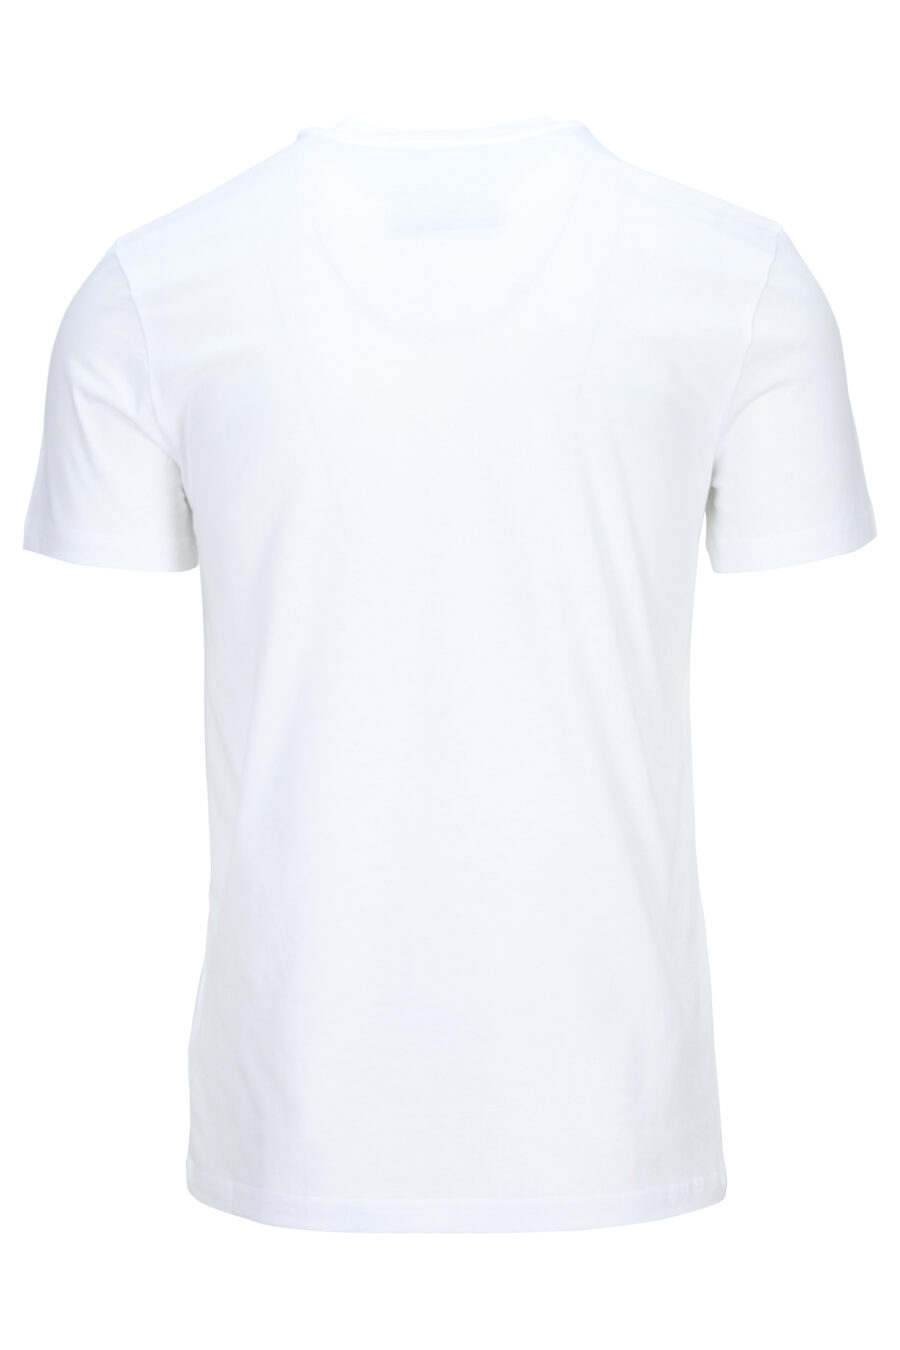 Camiseta blanca con maxilogo doble pregunta - 889316649710 1